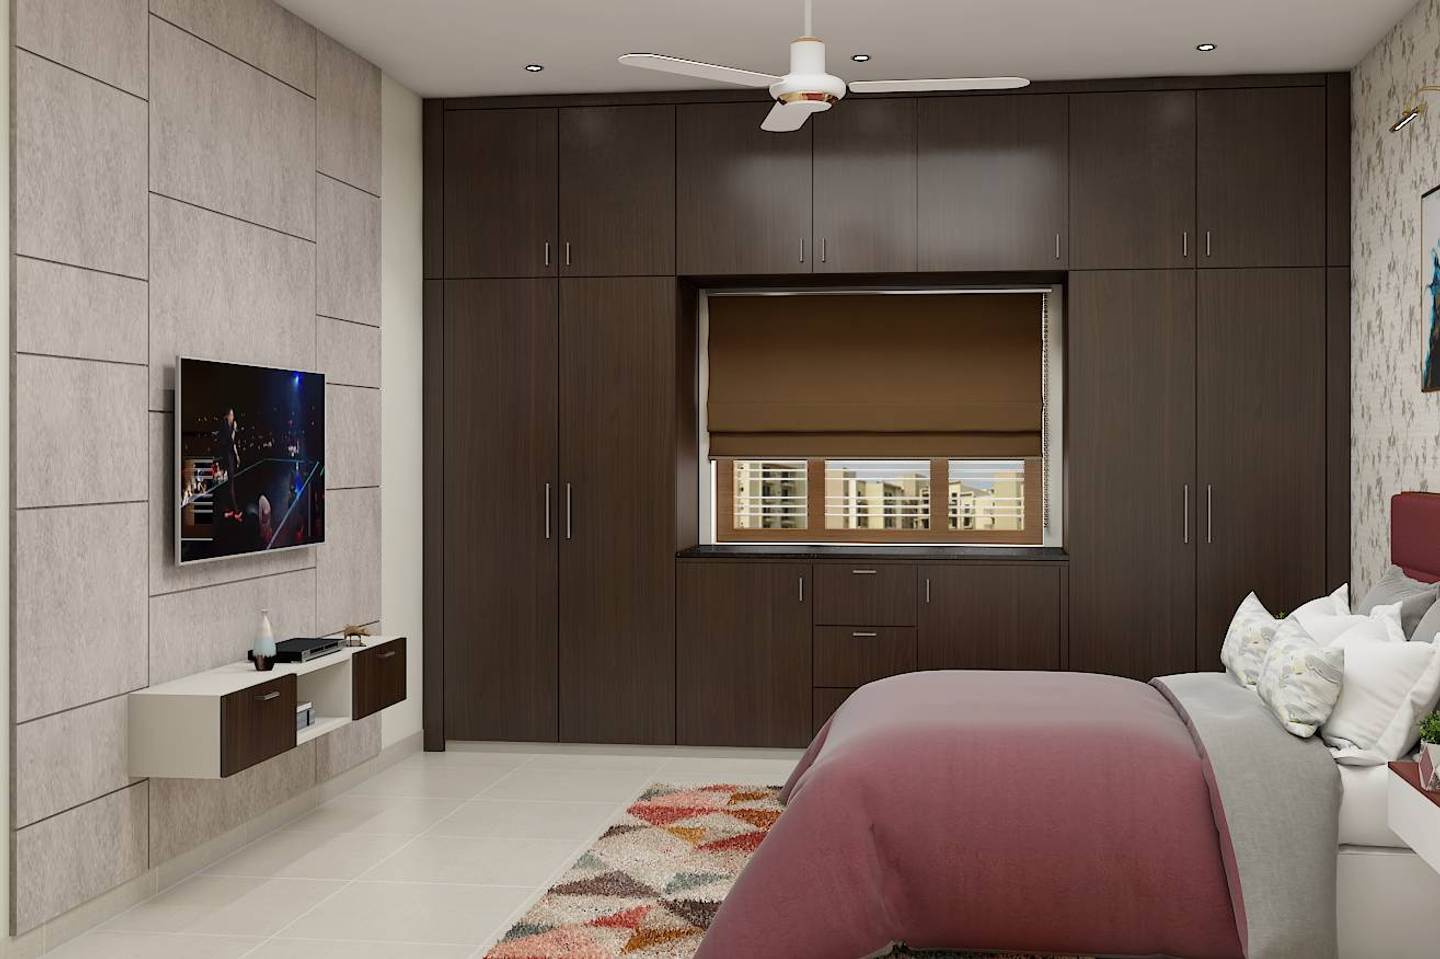 Brown 4-Door Swing Wardrobe Design With Lofts - Livspace